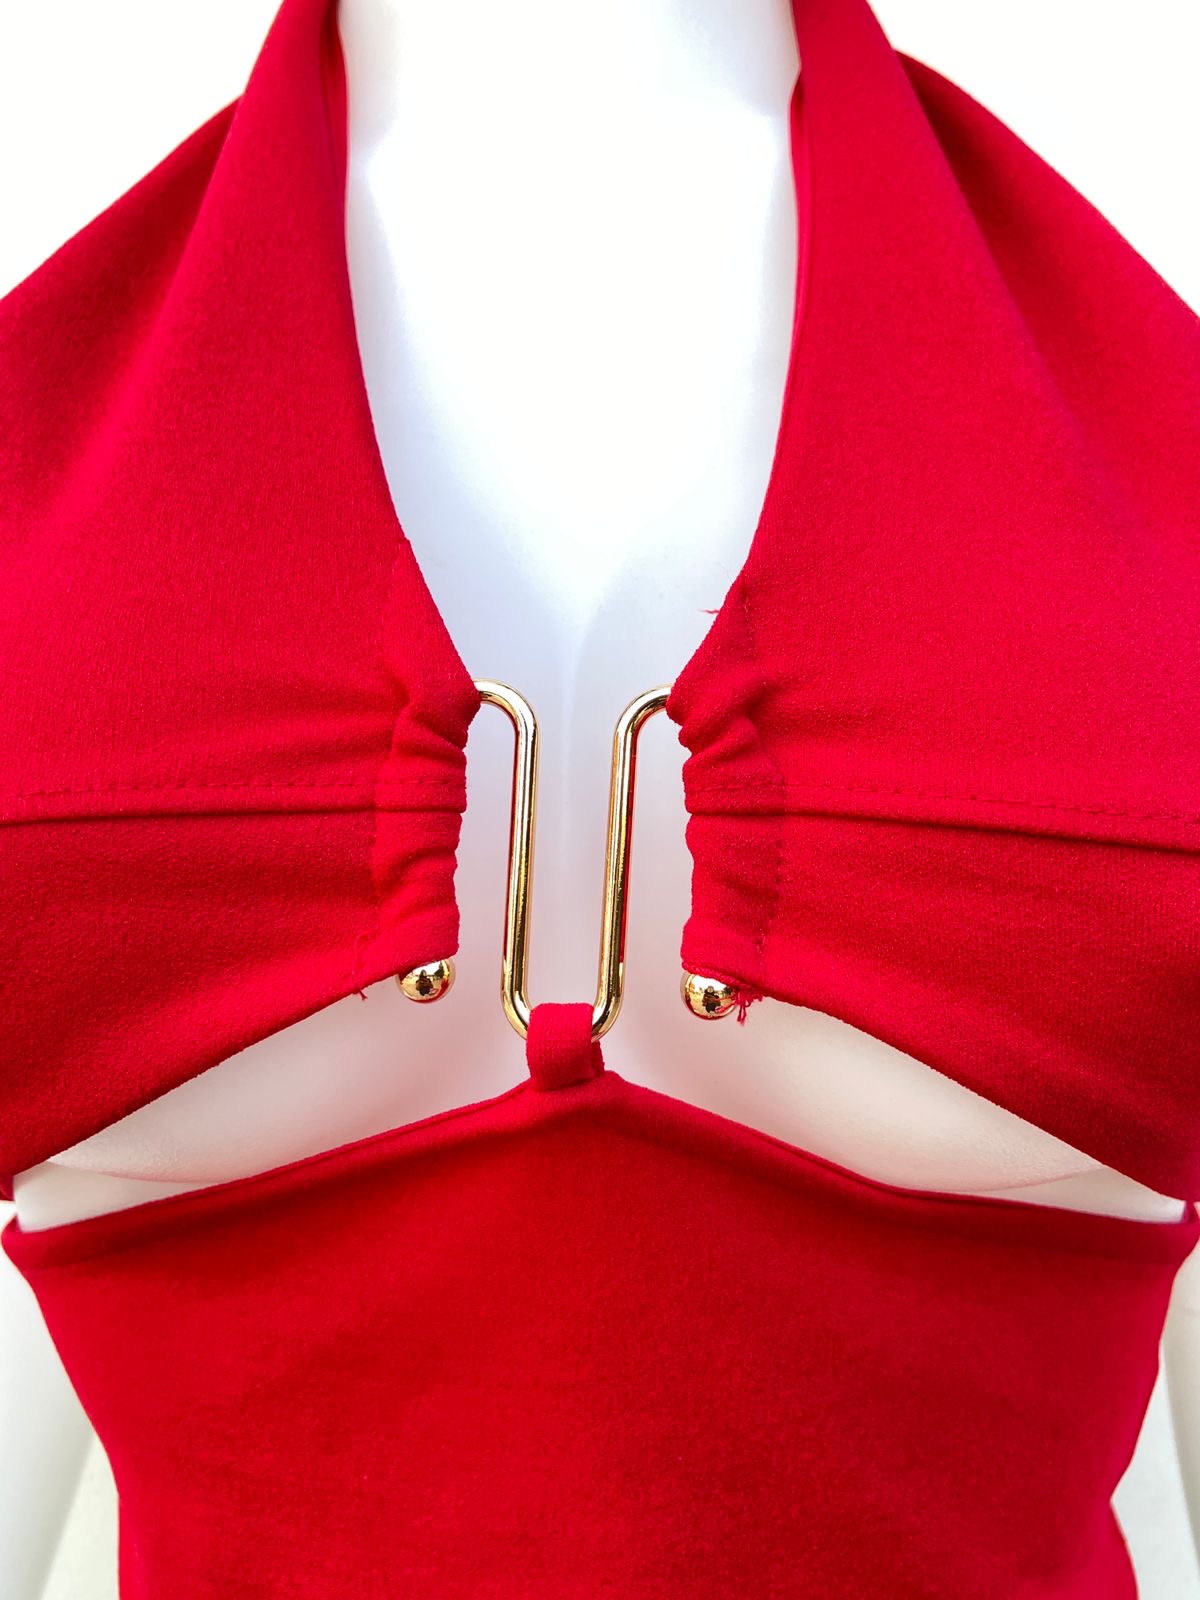 Top Fashion Nova Original, en color rojo, sexy con abertura y sujetador en dorado .